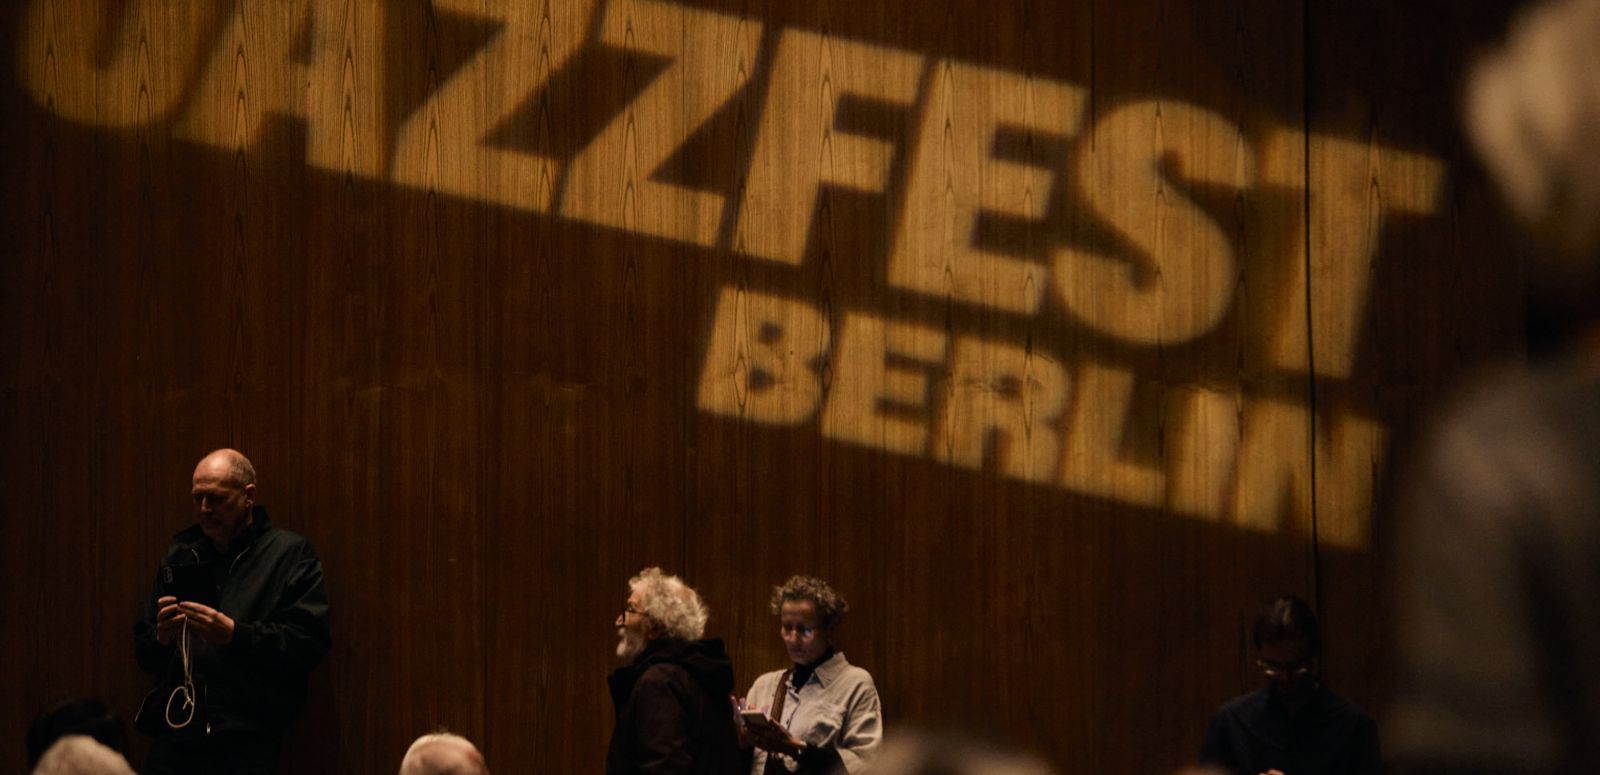 Der Schriftzug „Jazzfest Berlin“ wird an die Wand des Zuschauersaals des Haus der Berliner Festspiele projiziert. Zuschauer*innen stehen davor haben zum Teil ihre Plätze eingenommen.